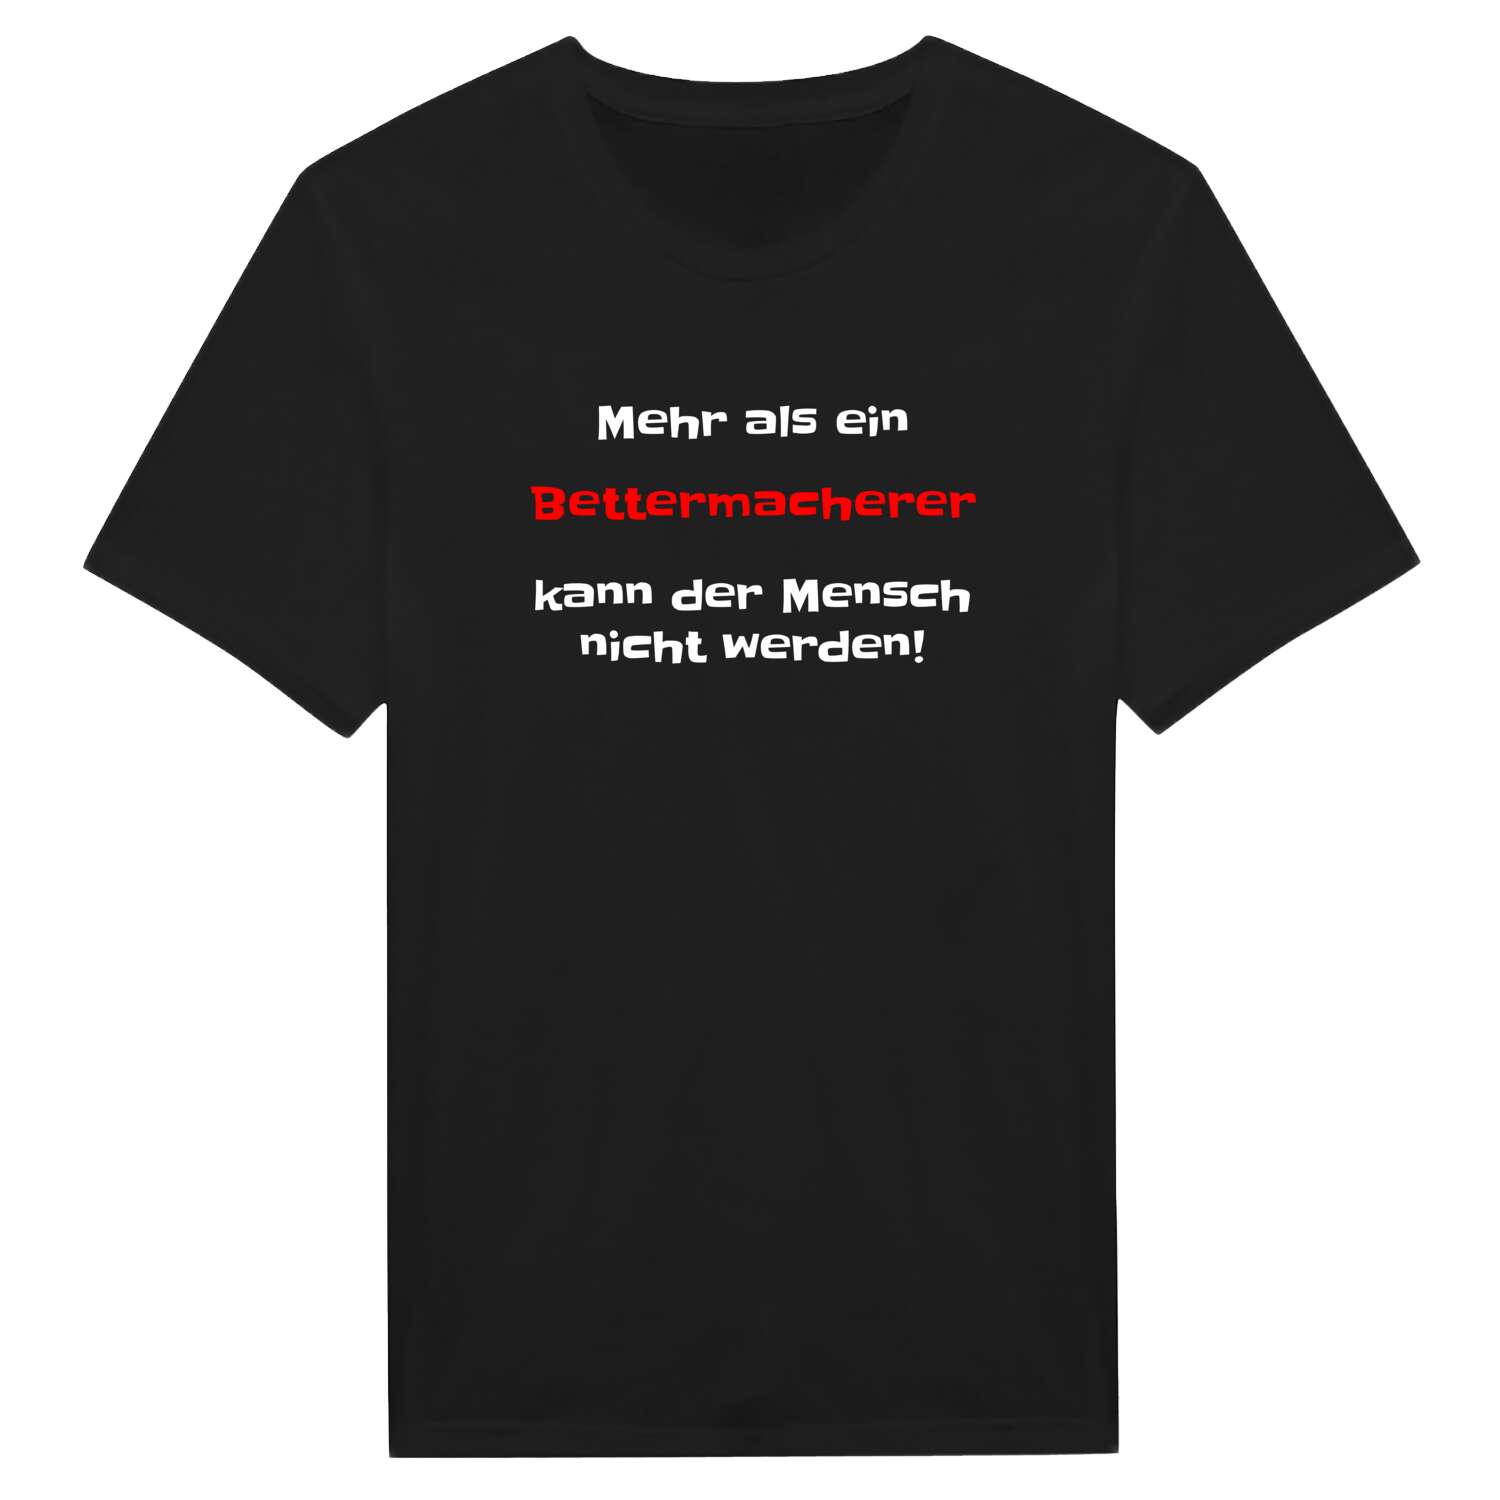 Bettermacher T-Shirt »Mehr als ein«